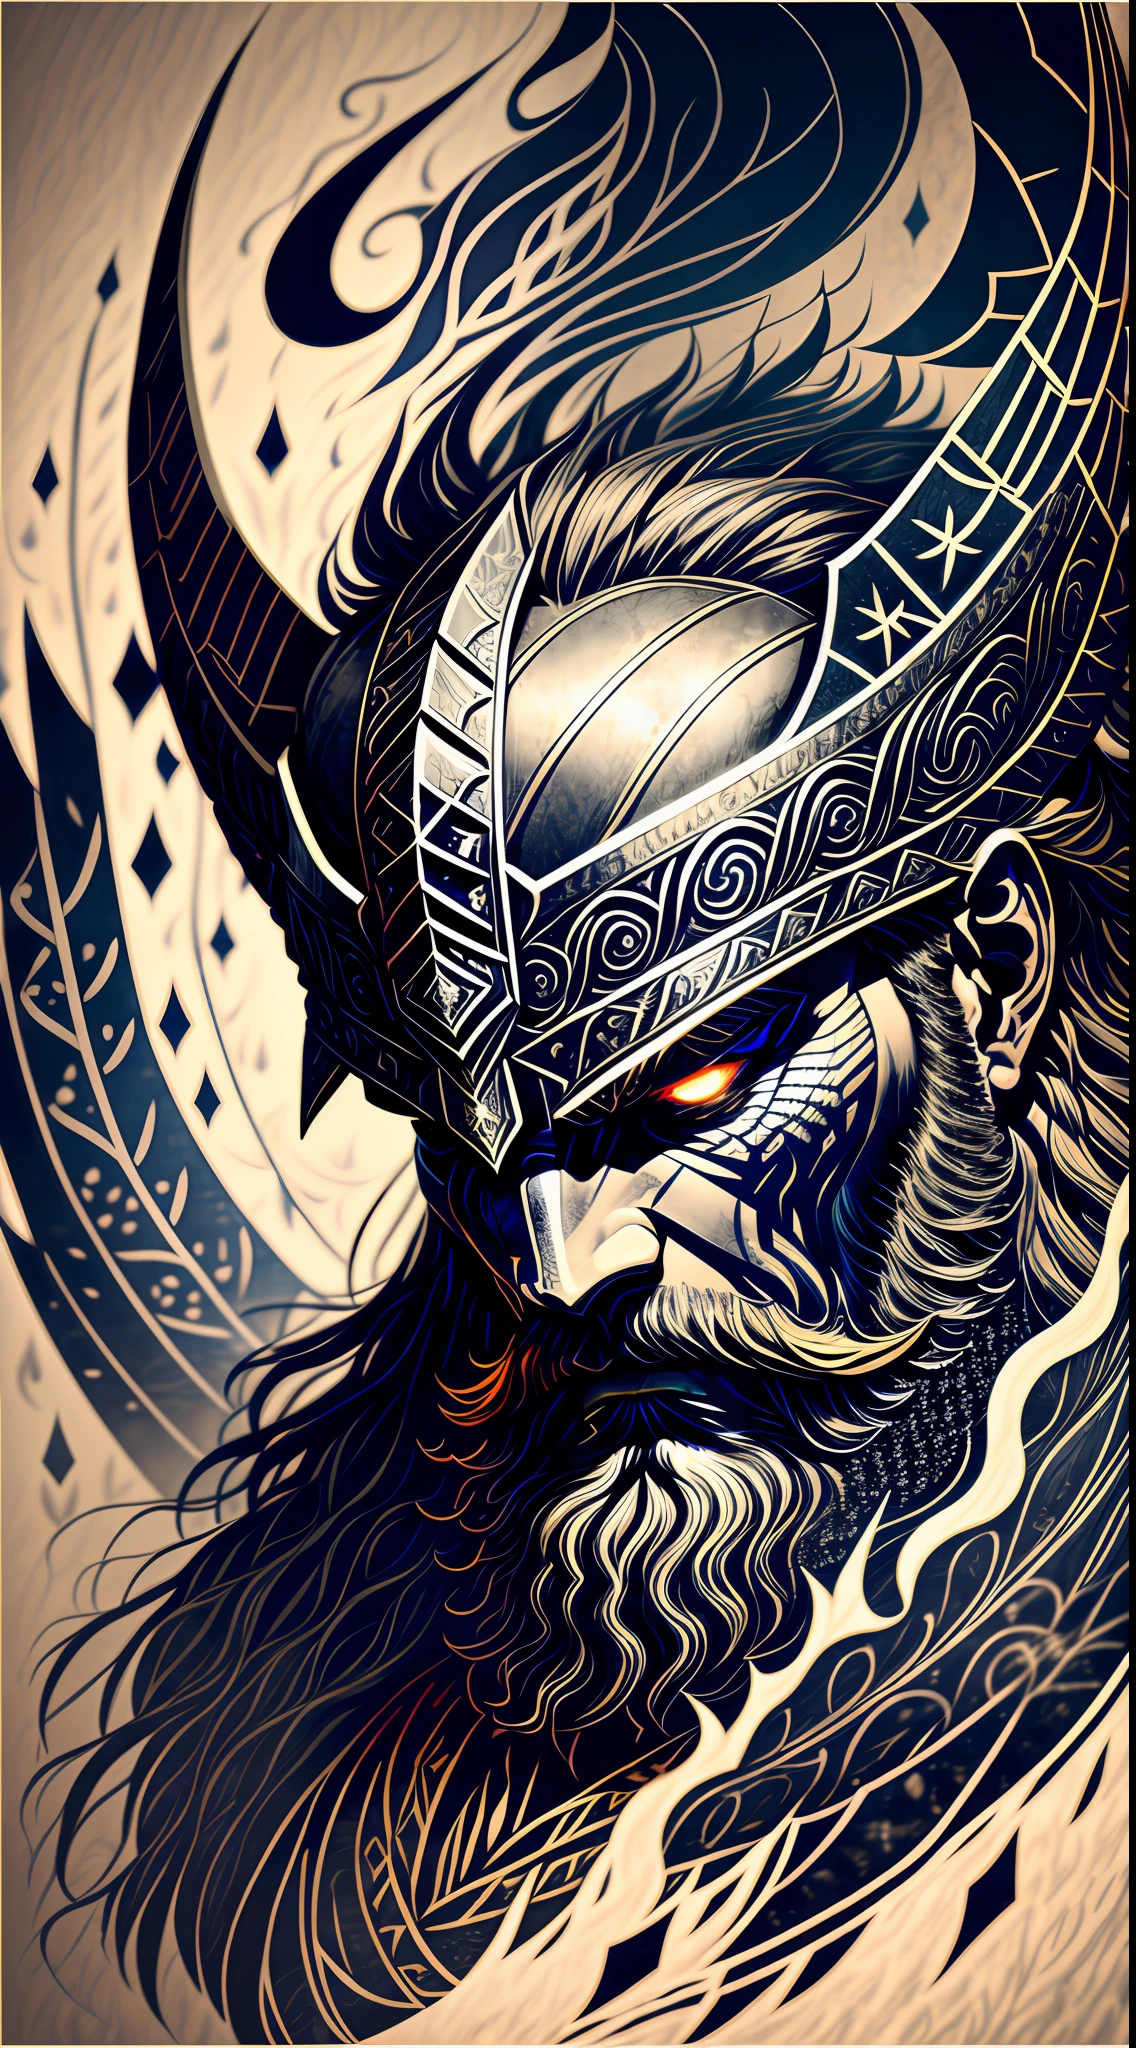 Um close intenso de um guerreiro Viking com piercing, olhos brilhantes, cercado por uma escuridão escura. Seu capacete com chifres lhe confere uma silhueta imponente, enquanto ele é selvagem, barba esvoaçante adiciona um toque de robustez. O rosto do guerreiro traz uma expressão de profunda raiva, uma prova de sua ferocidade na batalha. O pano de fundo está repleto de gavinhas rodopiantes de escuridão, uma reminiscência de antigas forças mitológicas. A atmosfera está tensa, sugerindo os poderes míticos que cercam o guerreiro. A imagem combina alto detalhe e um toque artístico, criando uma experiência visual cativante. obra de arte, TINTA SOBRE PERGAMINHO